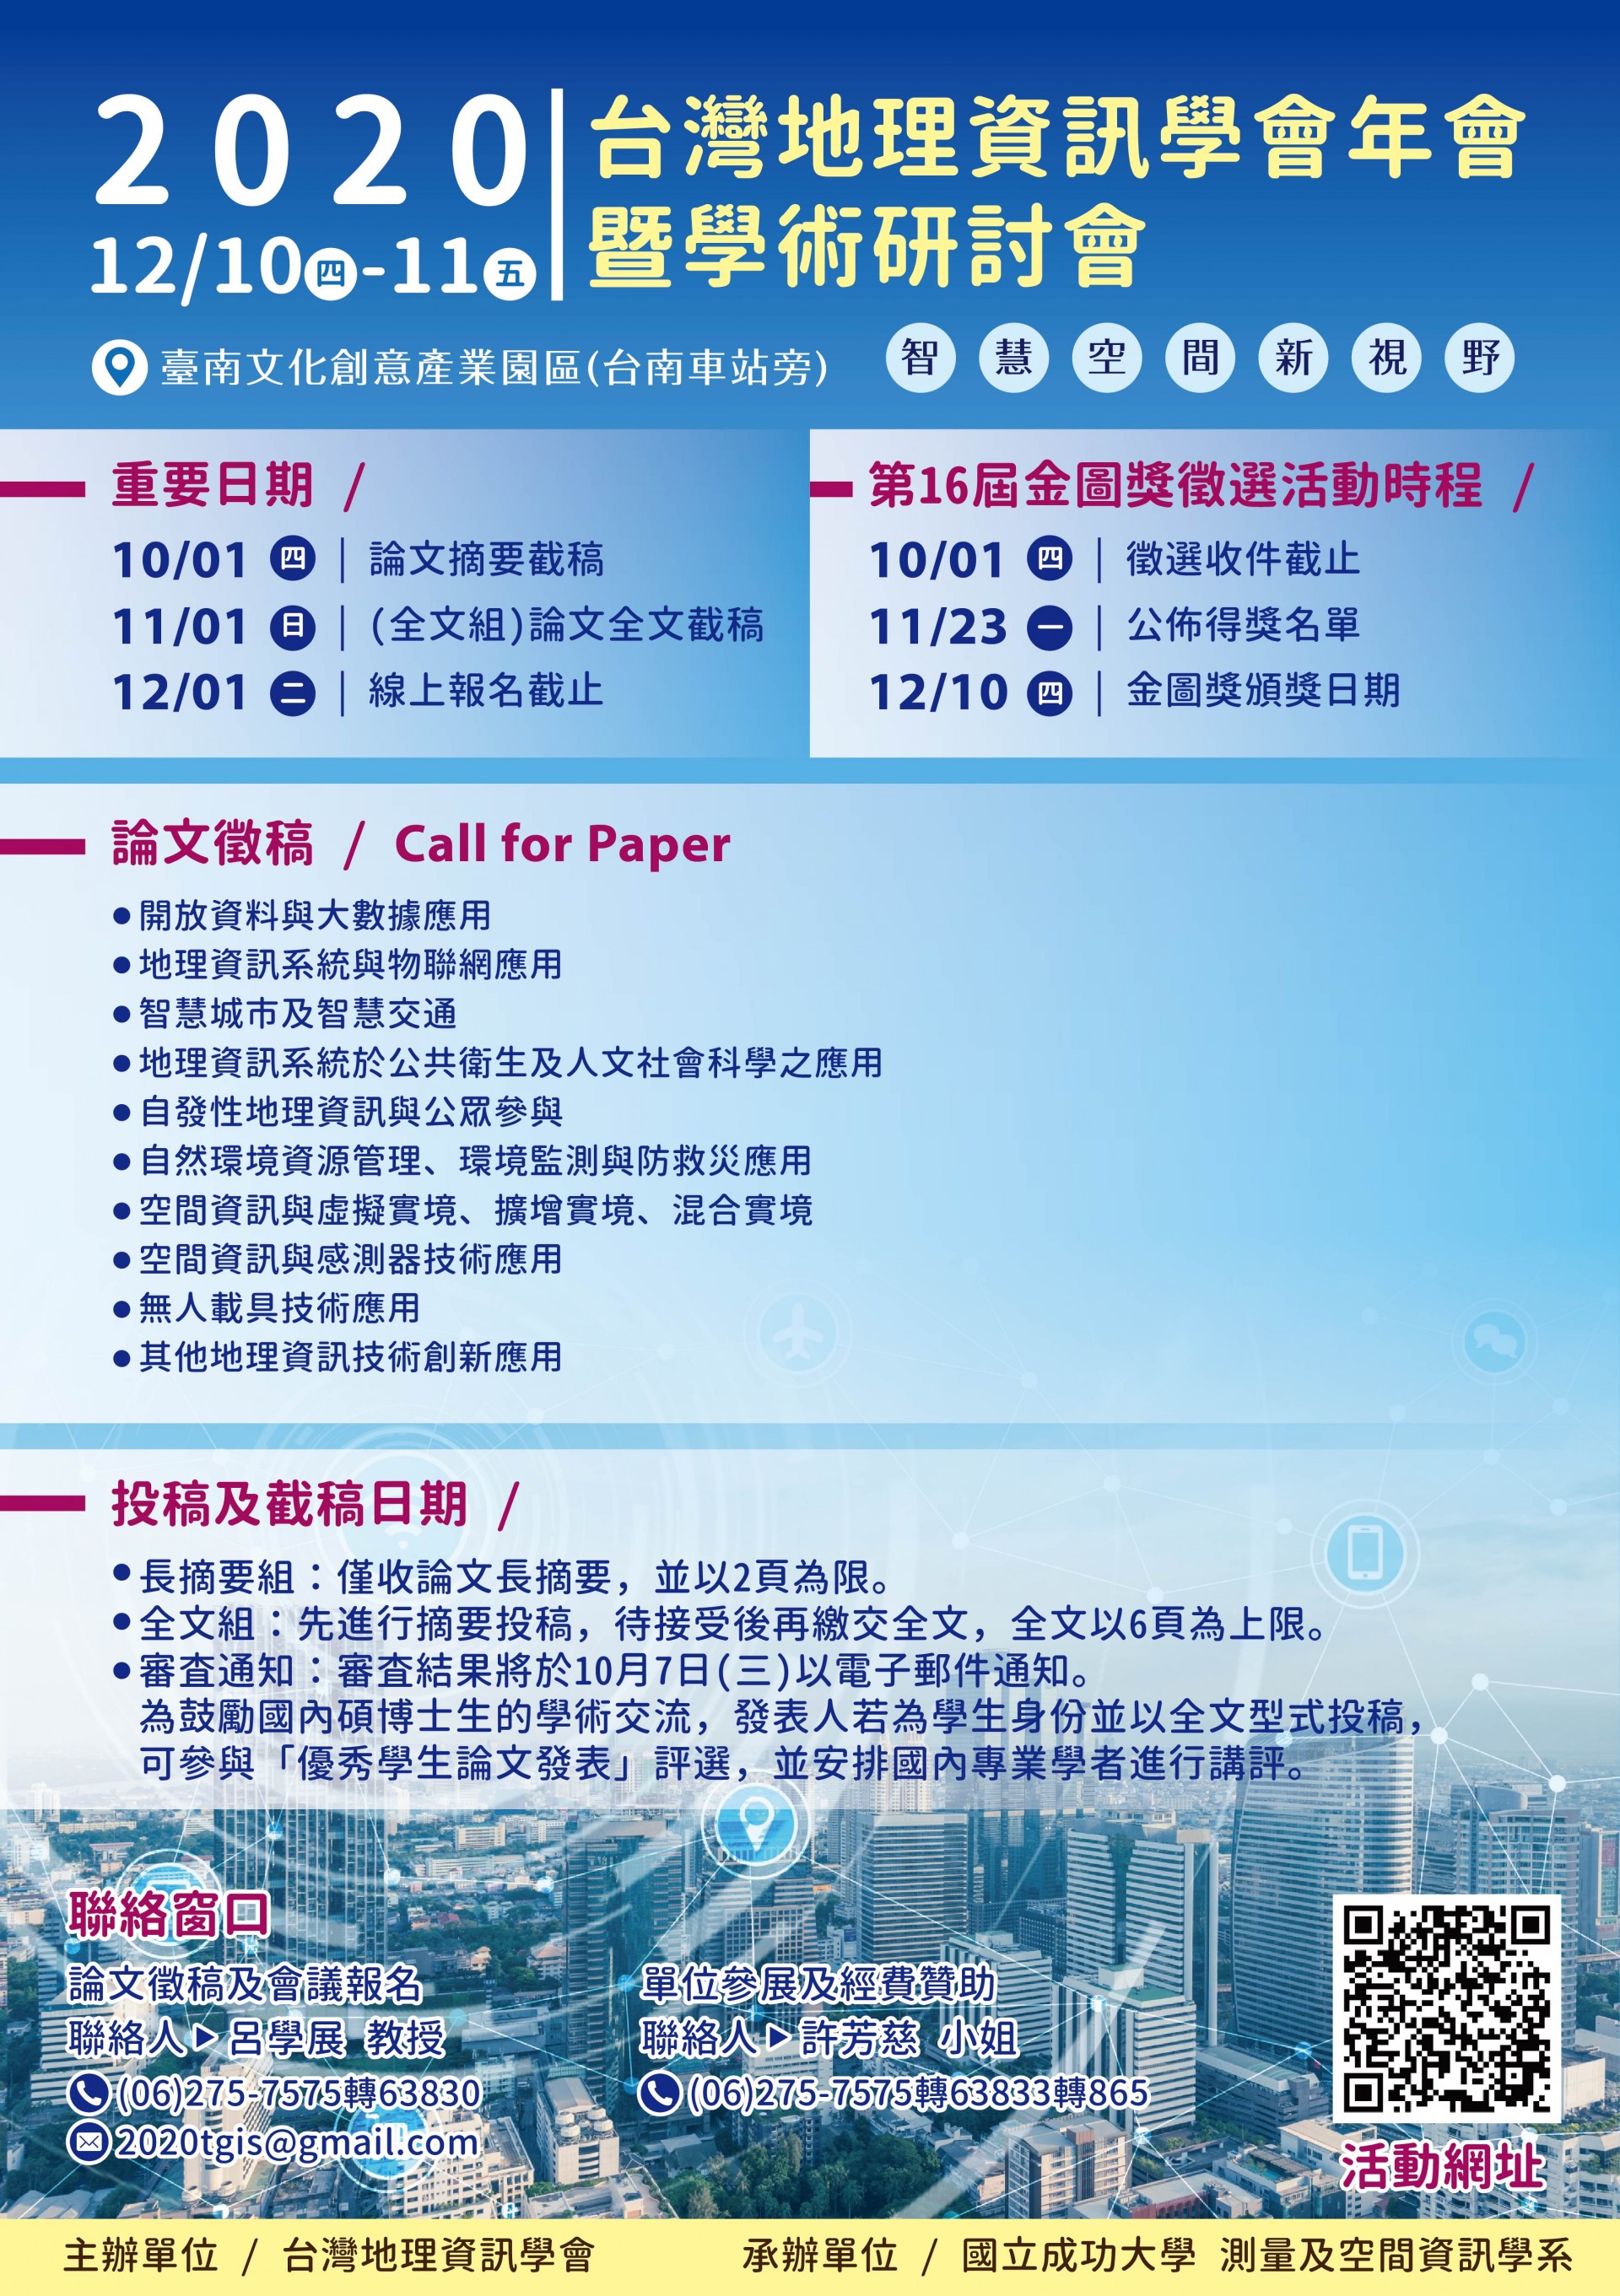 參展TGIS 2020 台灣地理資訊學會年會暨學術研討會